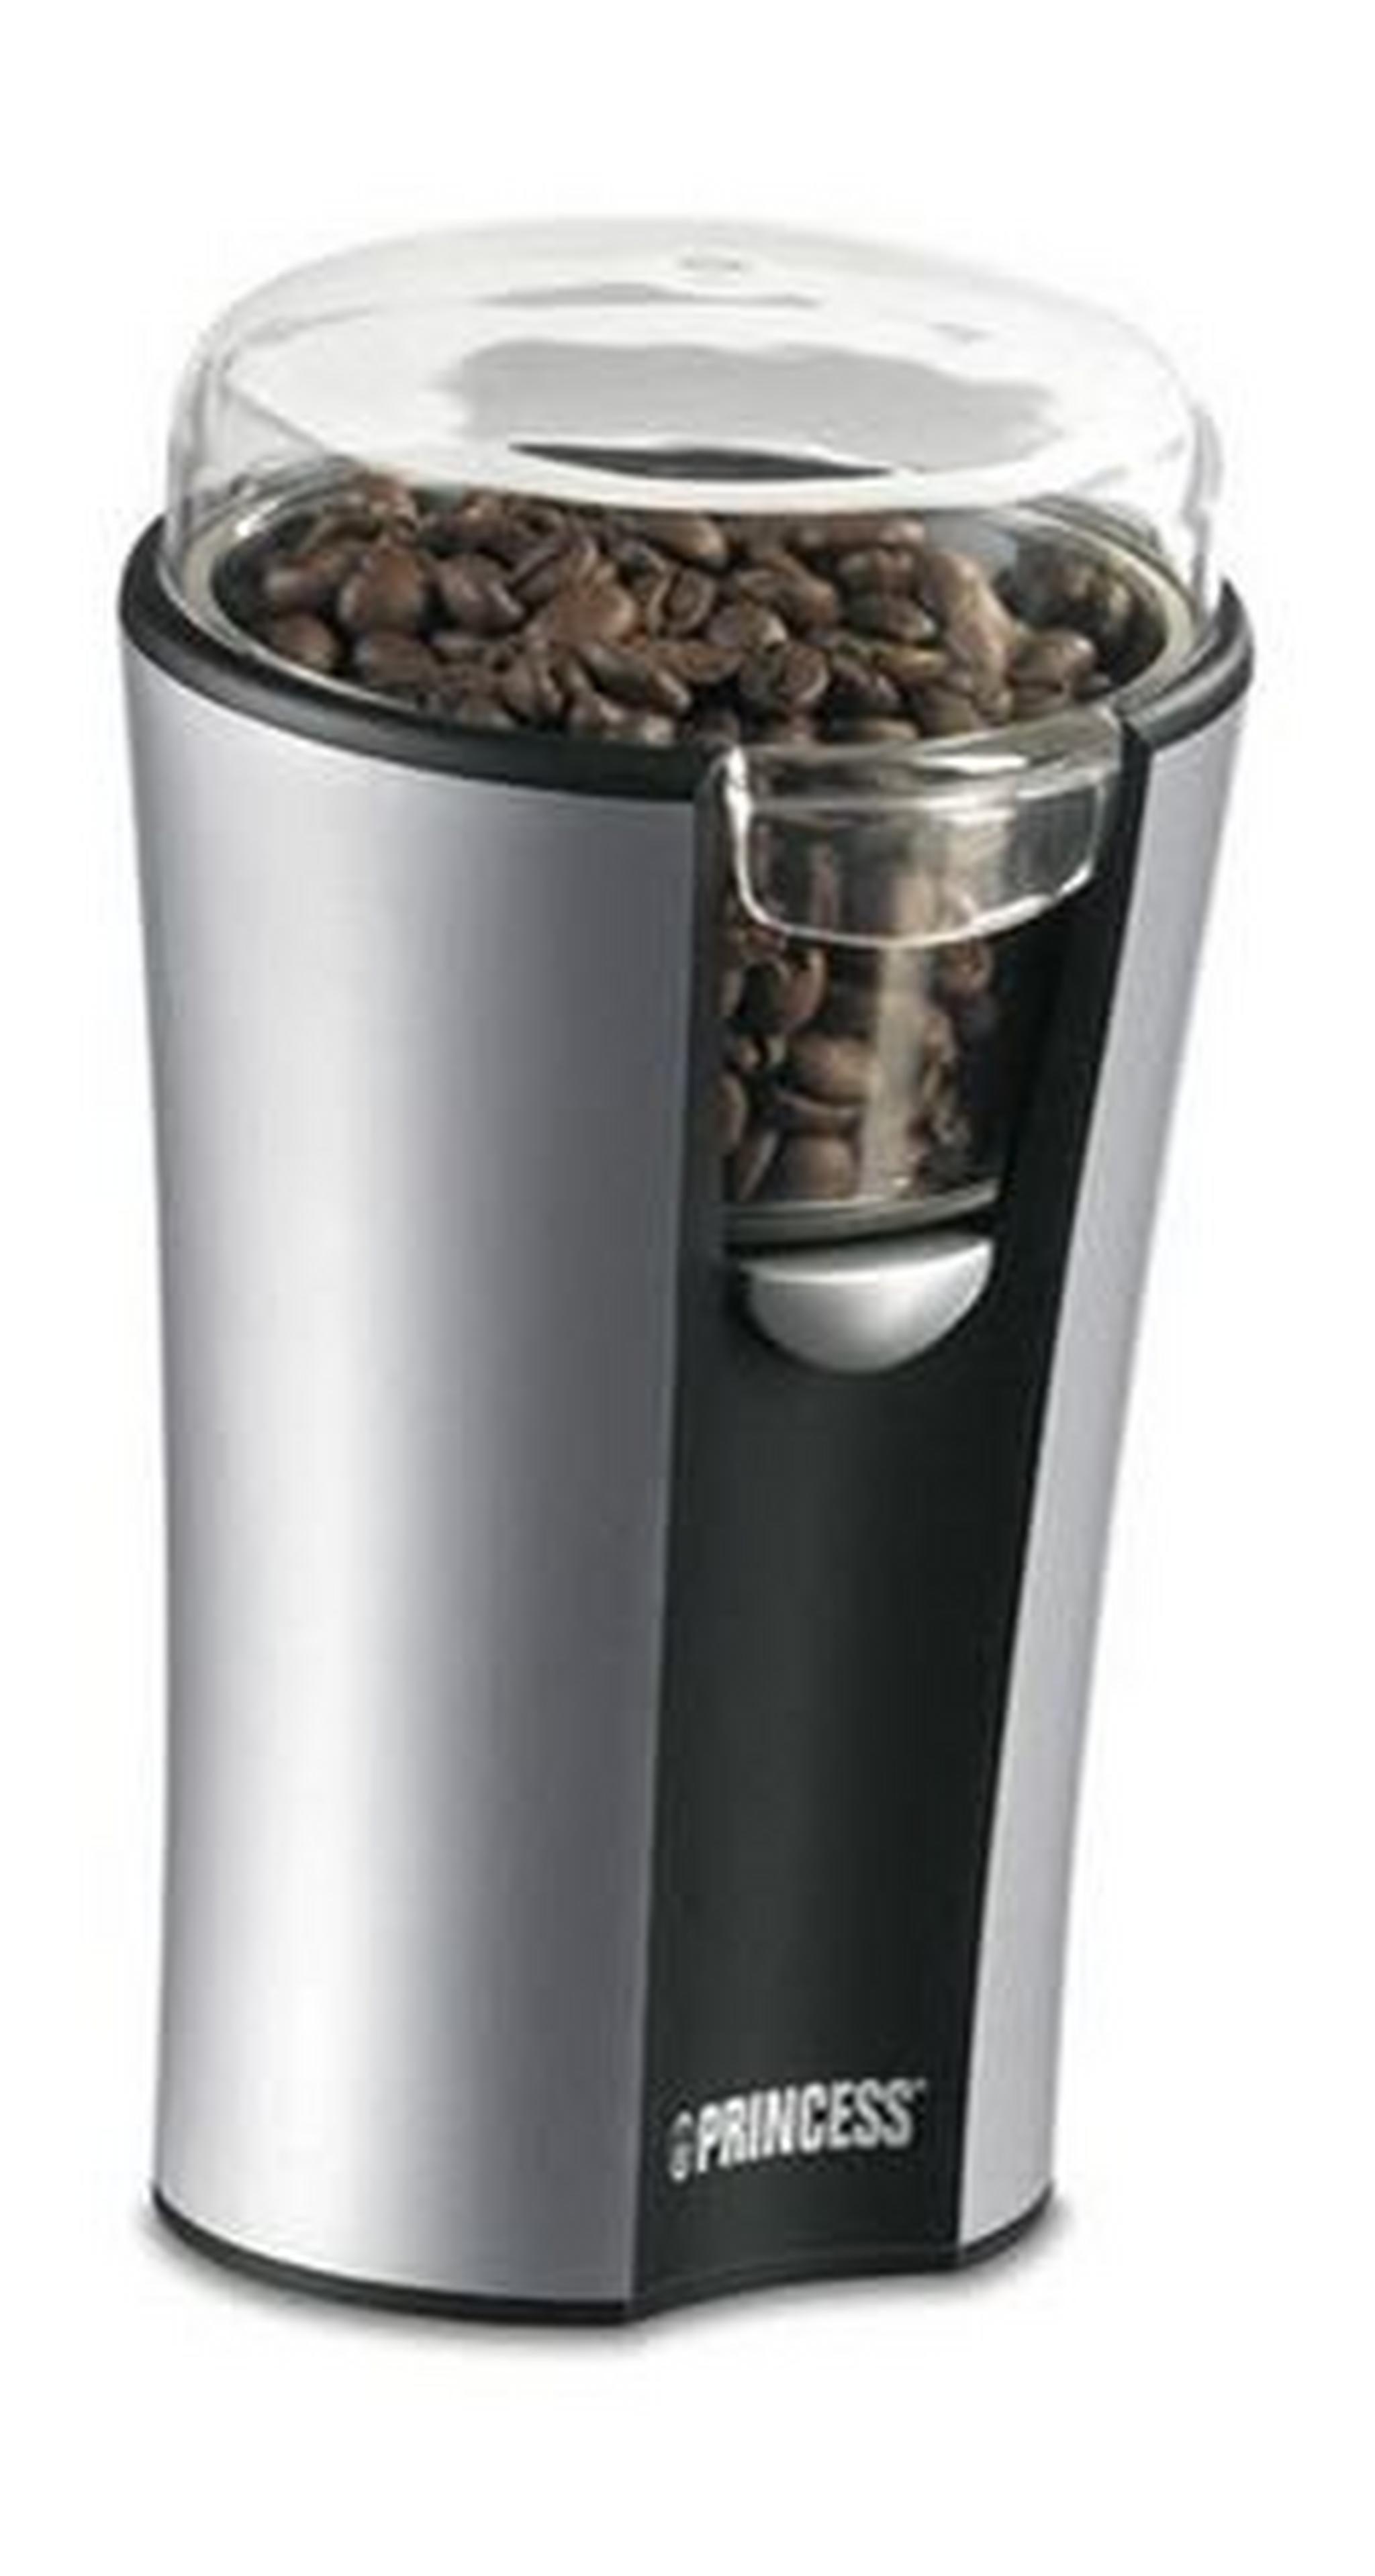 ماكينة طحن القهوة الكهربائية برينسيس بقوة ١٥٠ واط - أسود (242195)